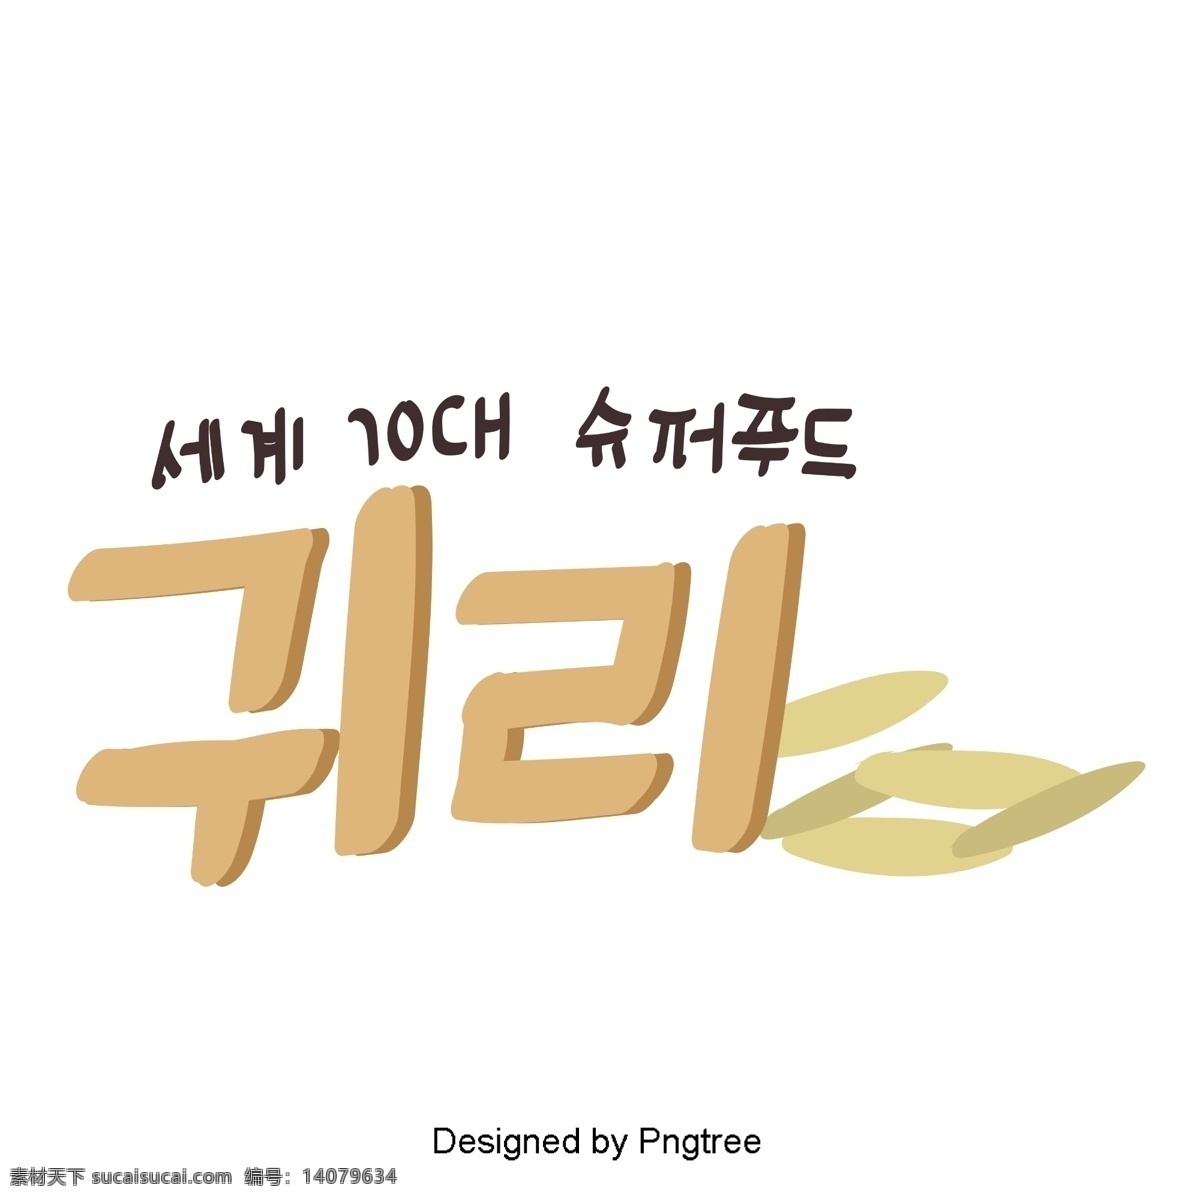 韩国 药材 燕麦 元素 手工 字体 美丽 风格 耳机 动画片 可爱 字形 手写 移动支付方式 韩文 棕色 水果